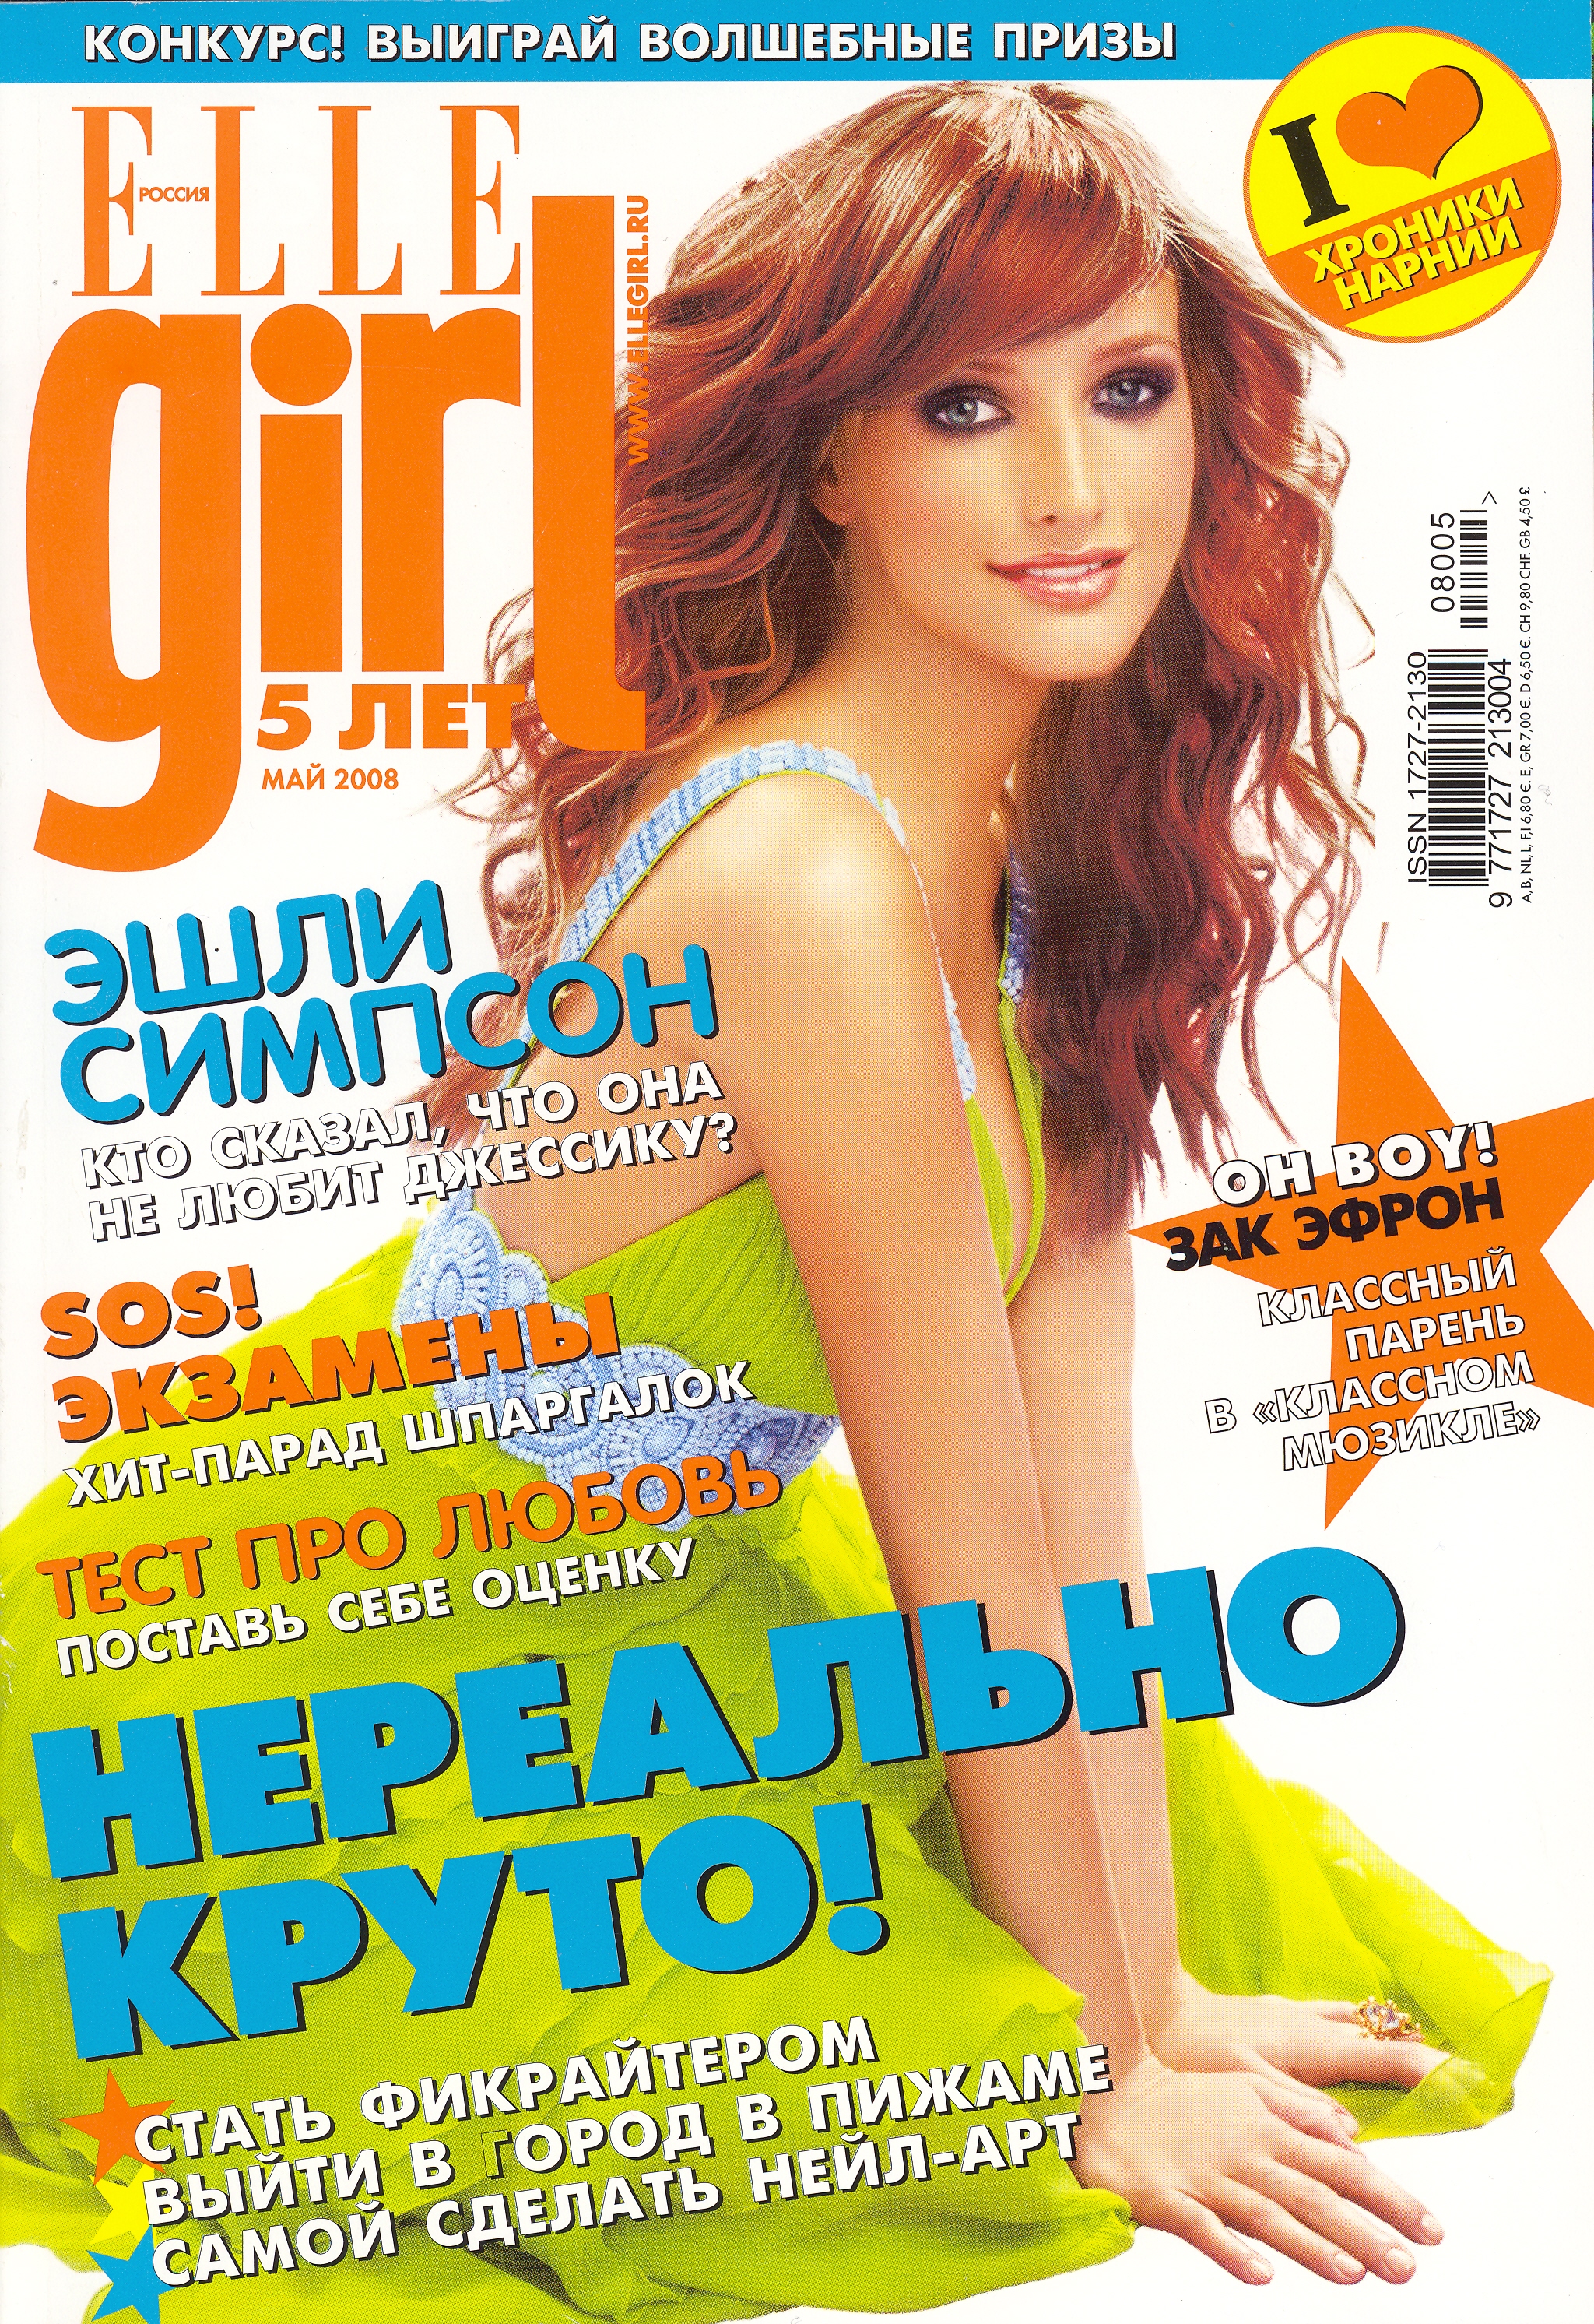 Titelblatt der russischen Ausgabe der "ELLEgirl", Mai 2008